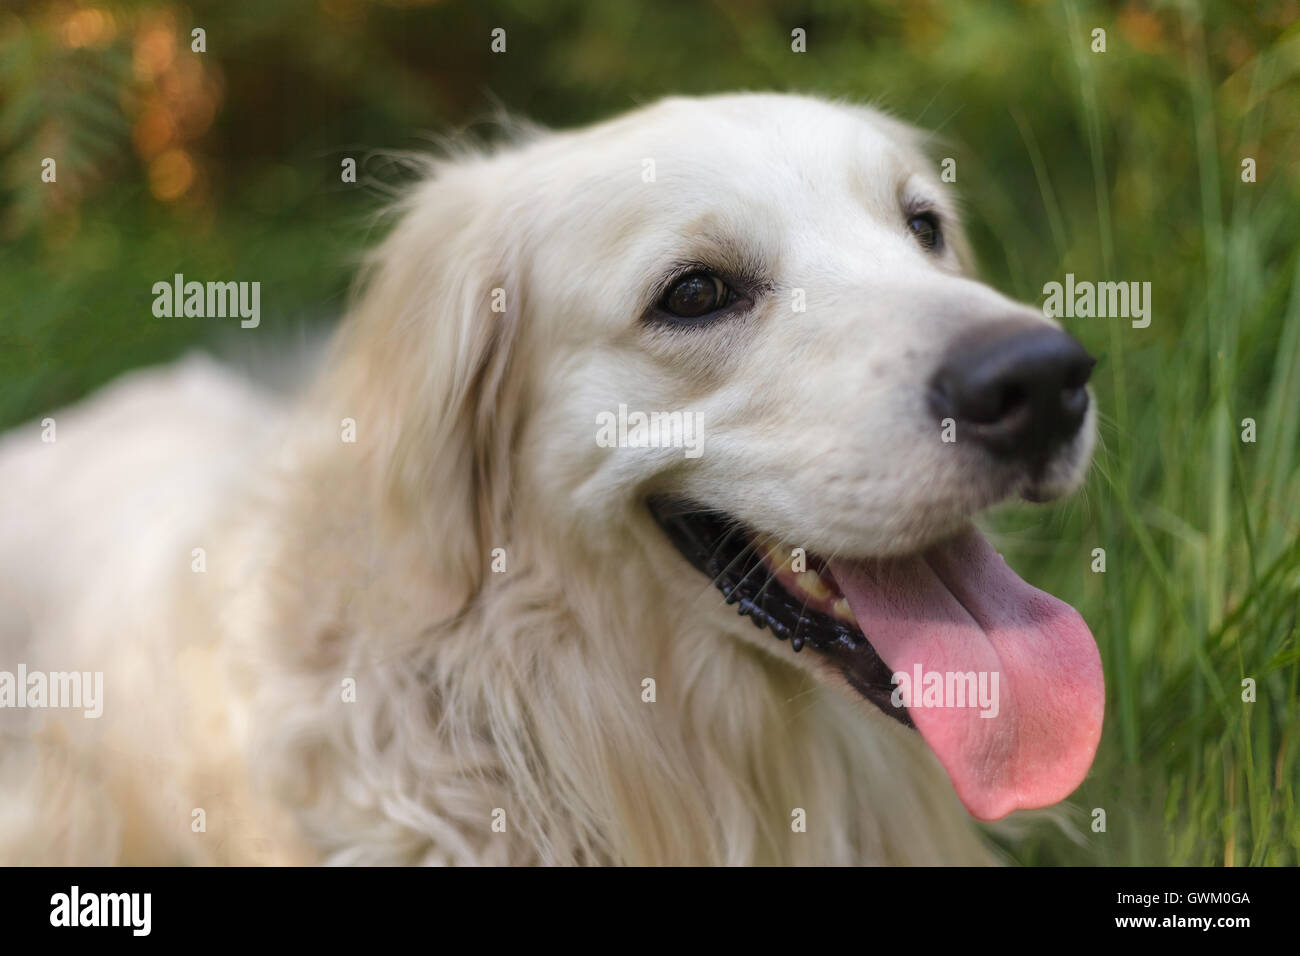 happy golden retriever dog Stock Photo